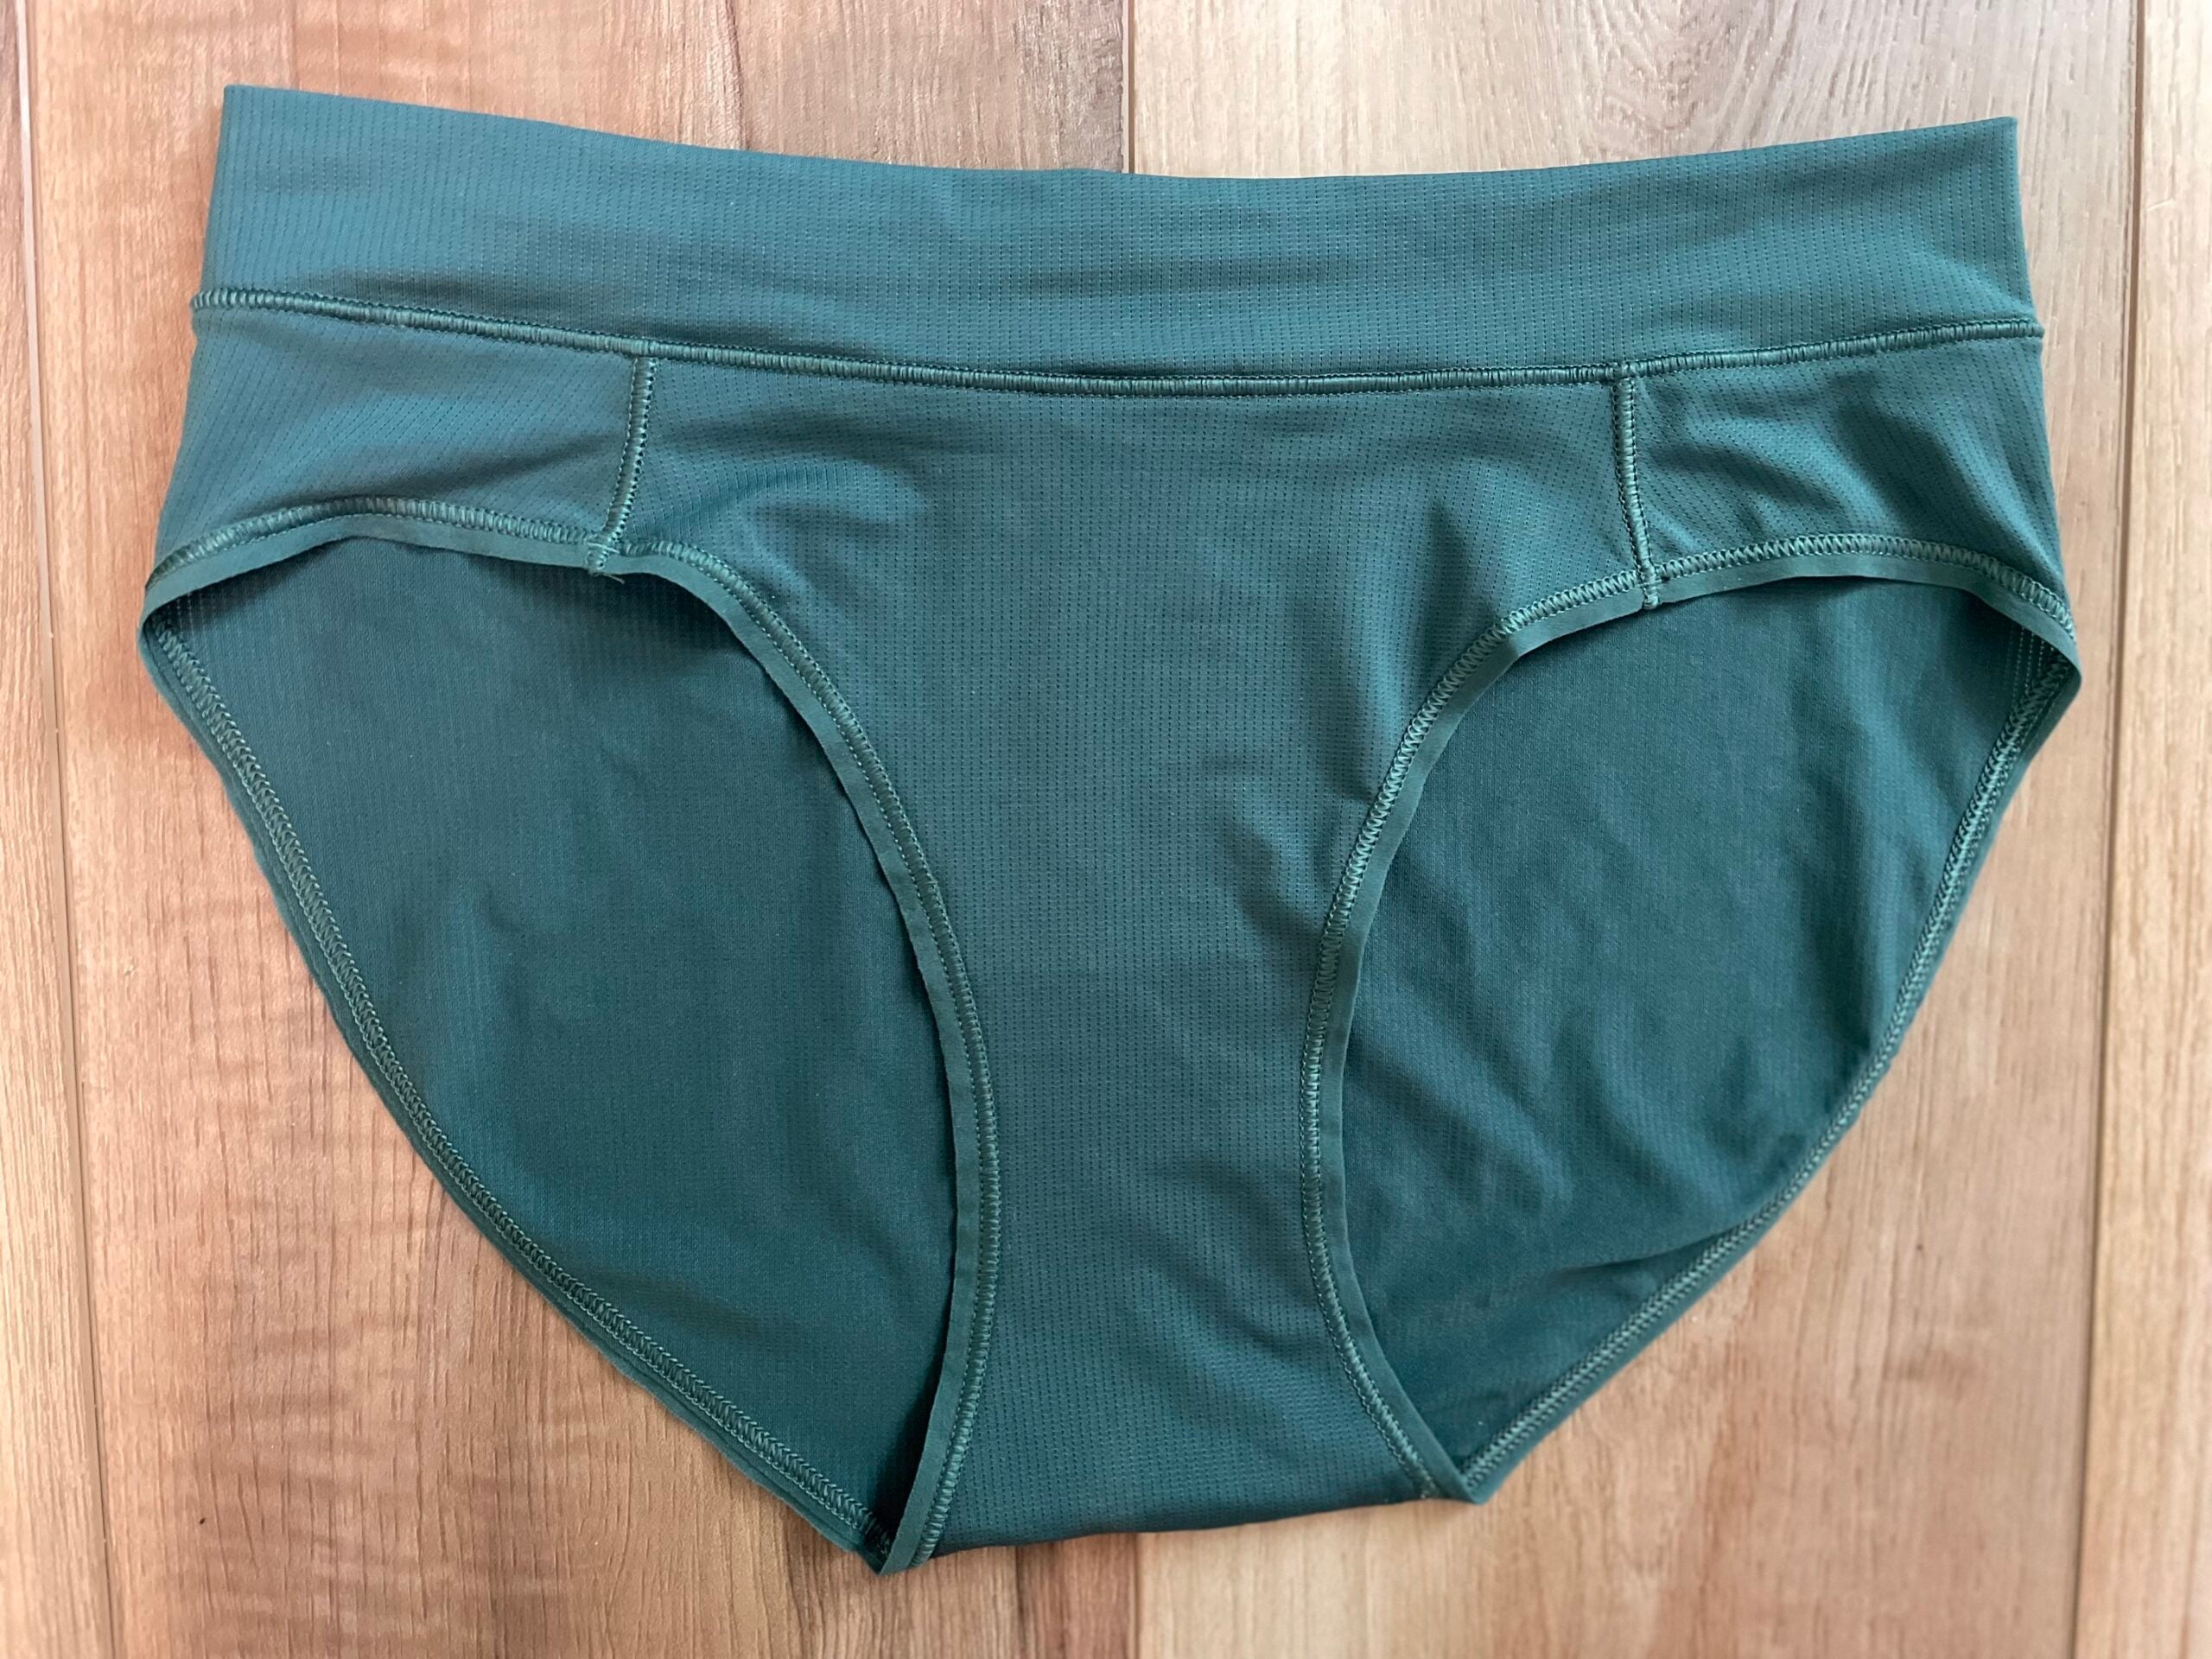 Hiking Underwear: What To Wear On the Trail – WAMA Underwear